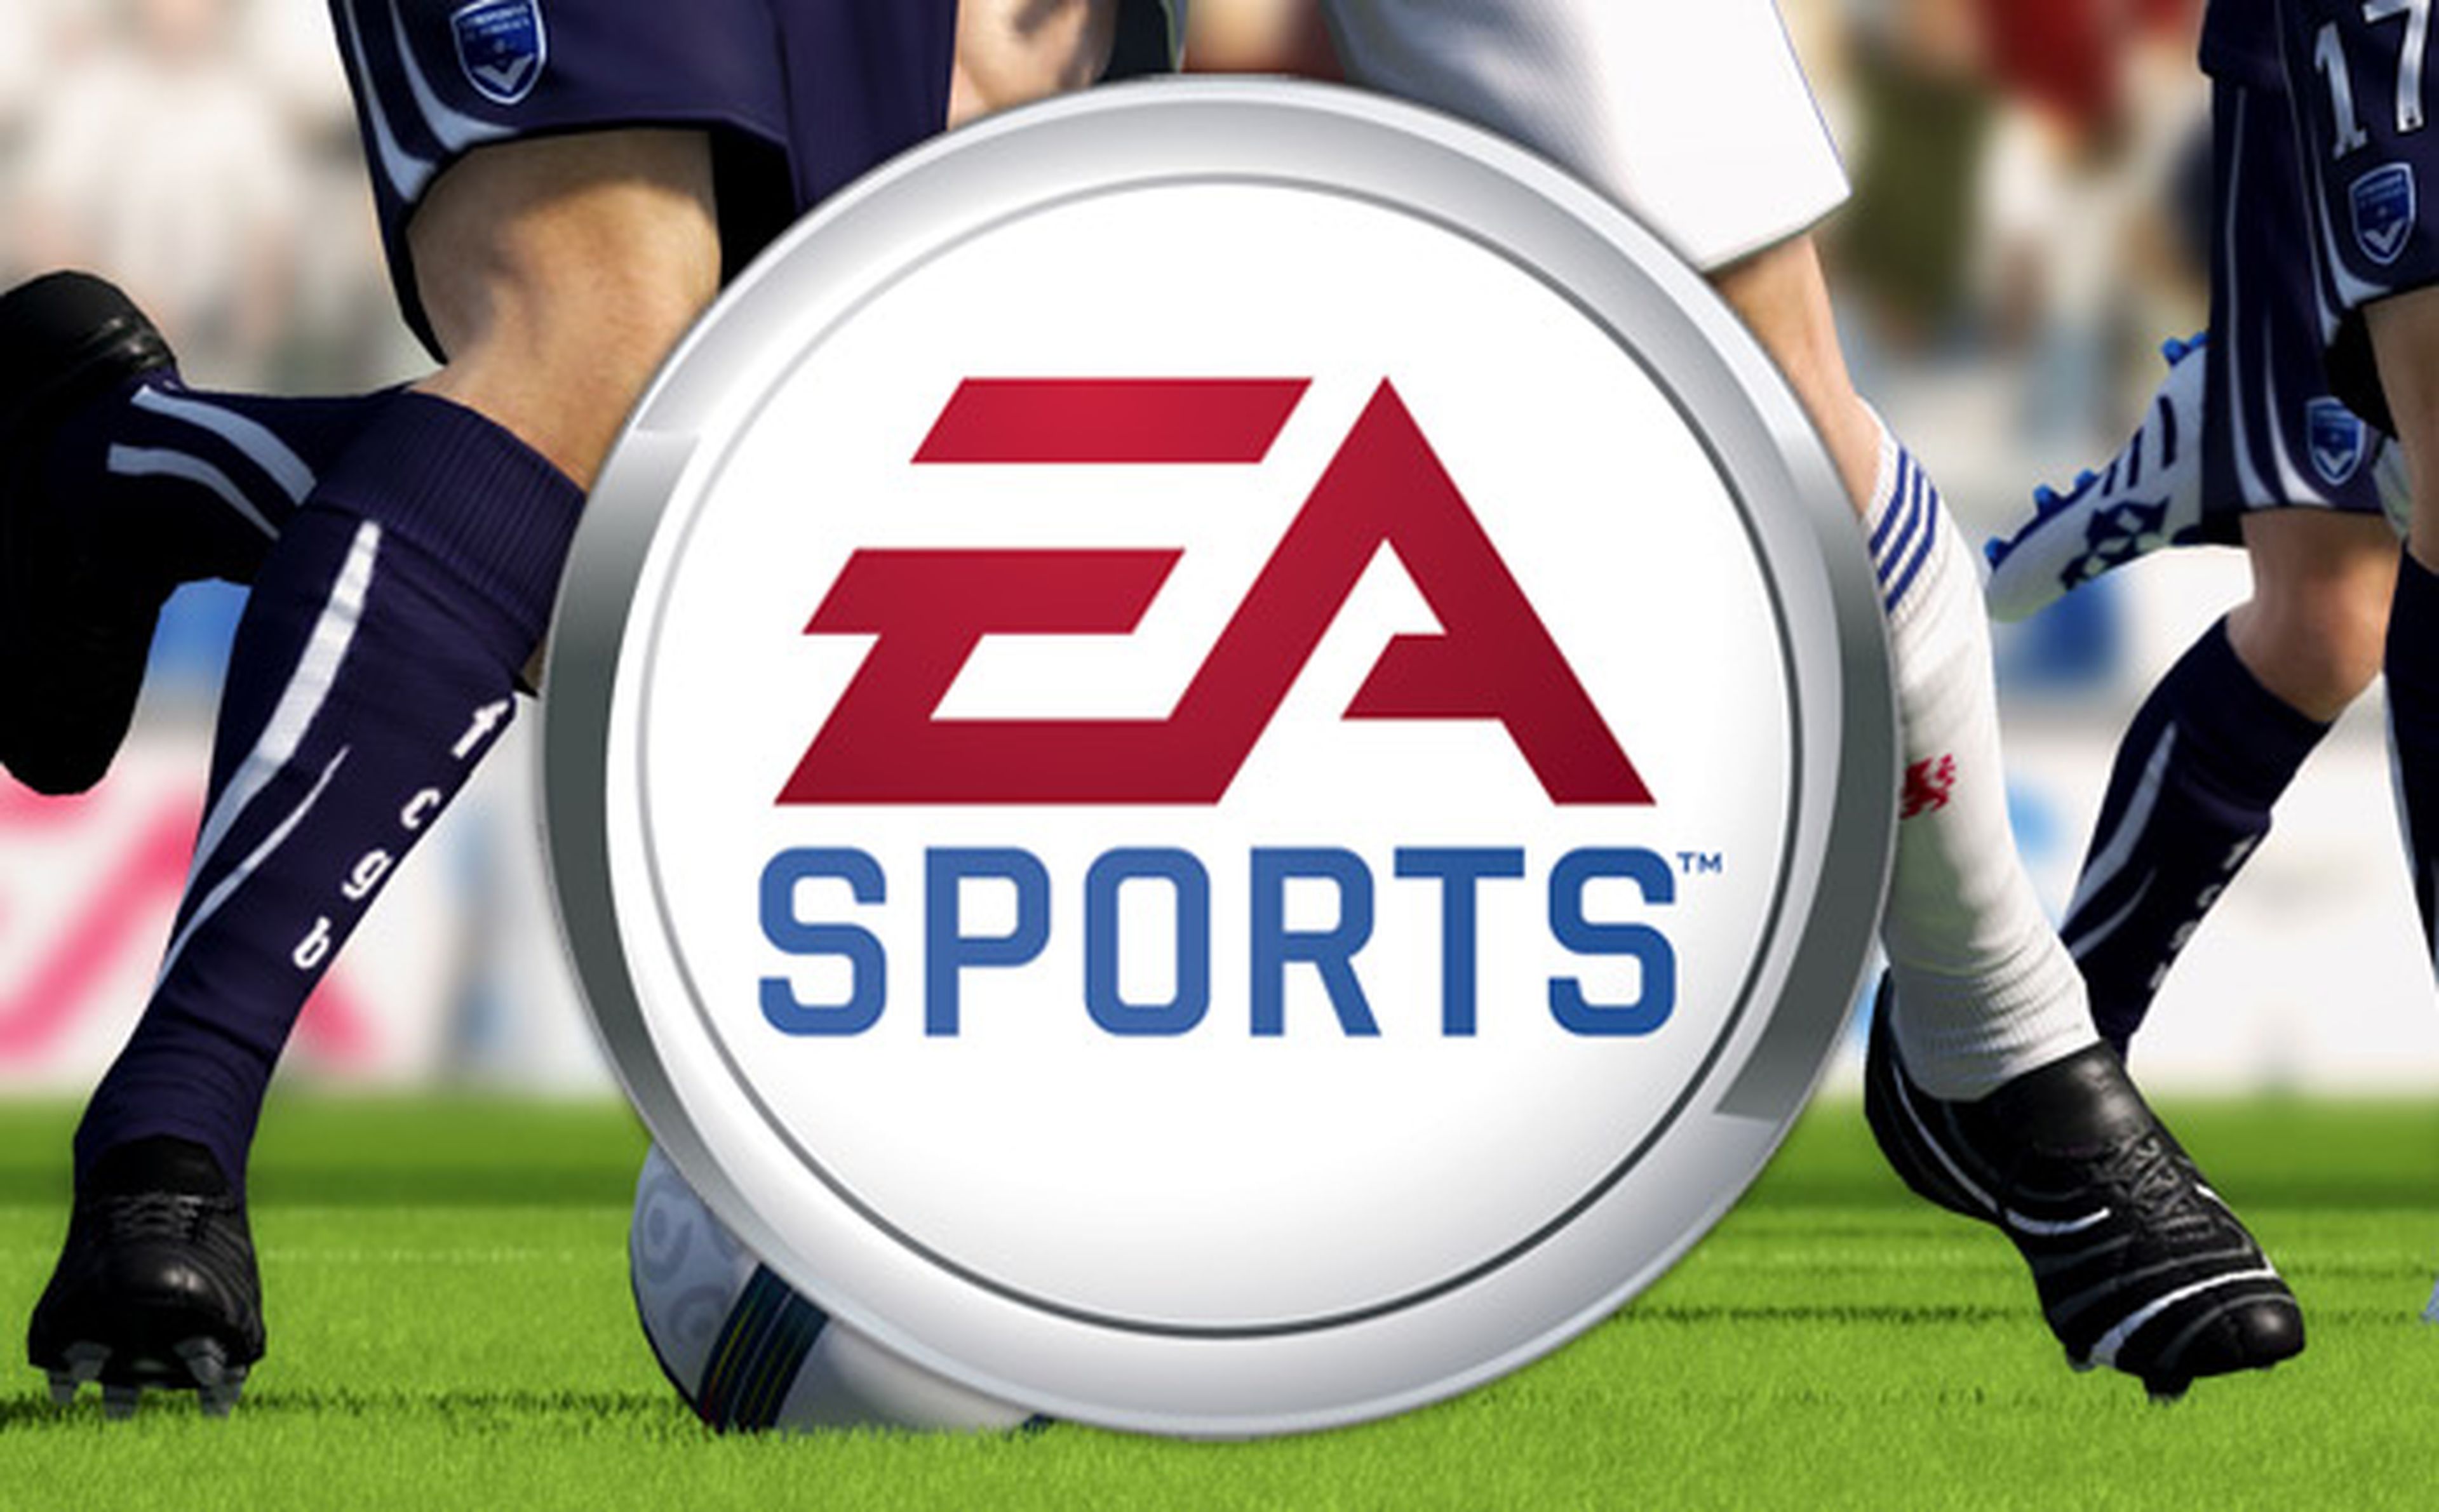 ¿Suscripciones para EA Sports?